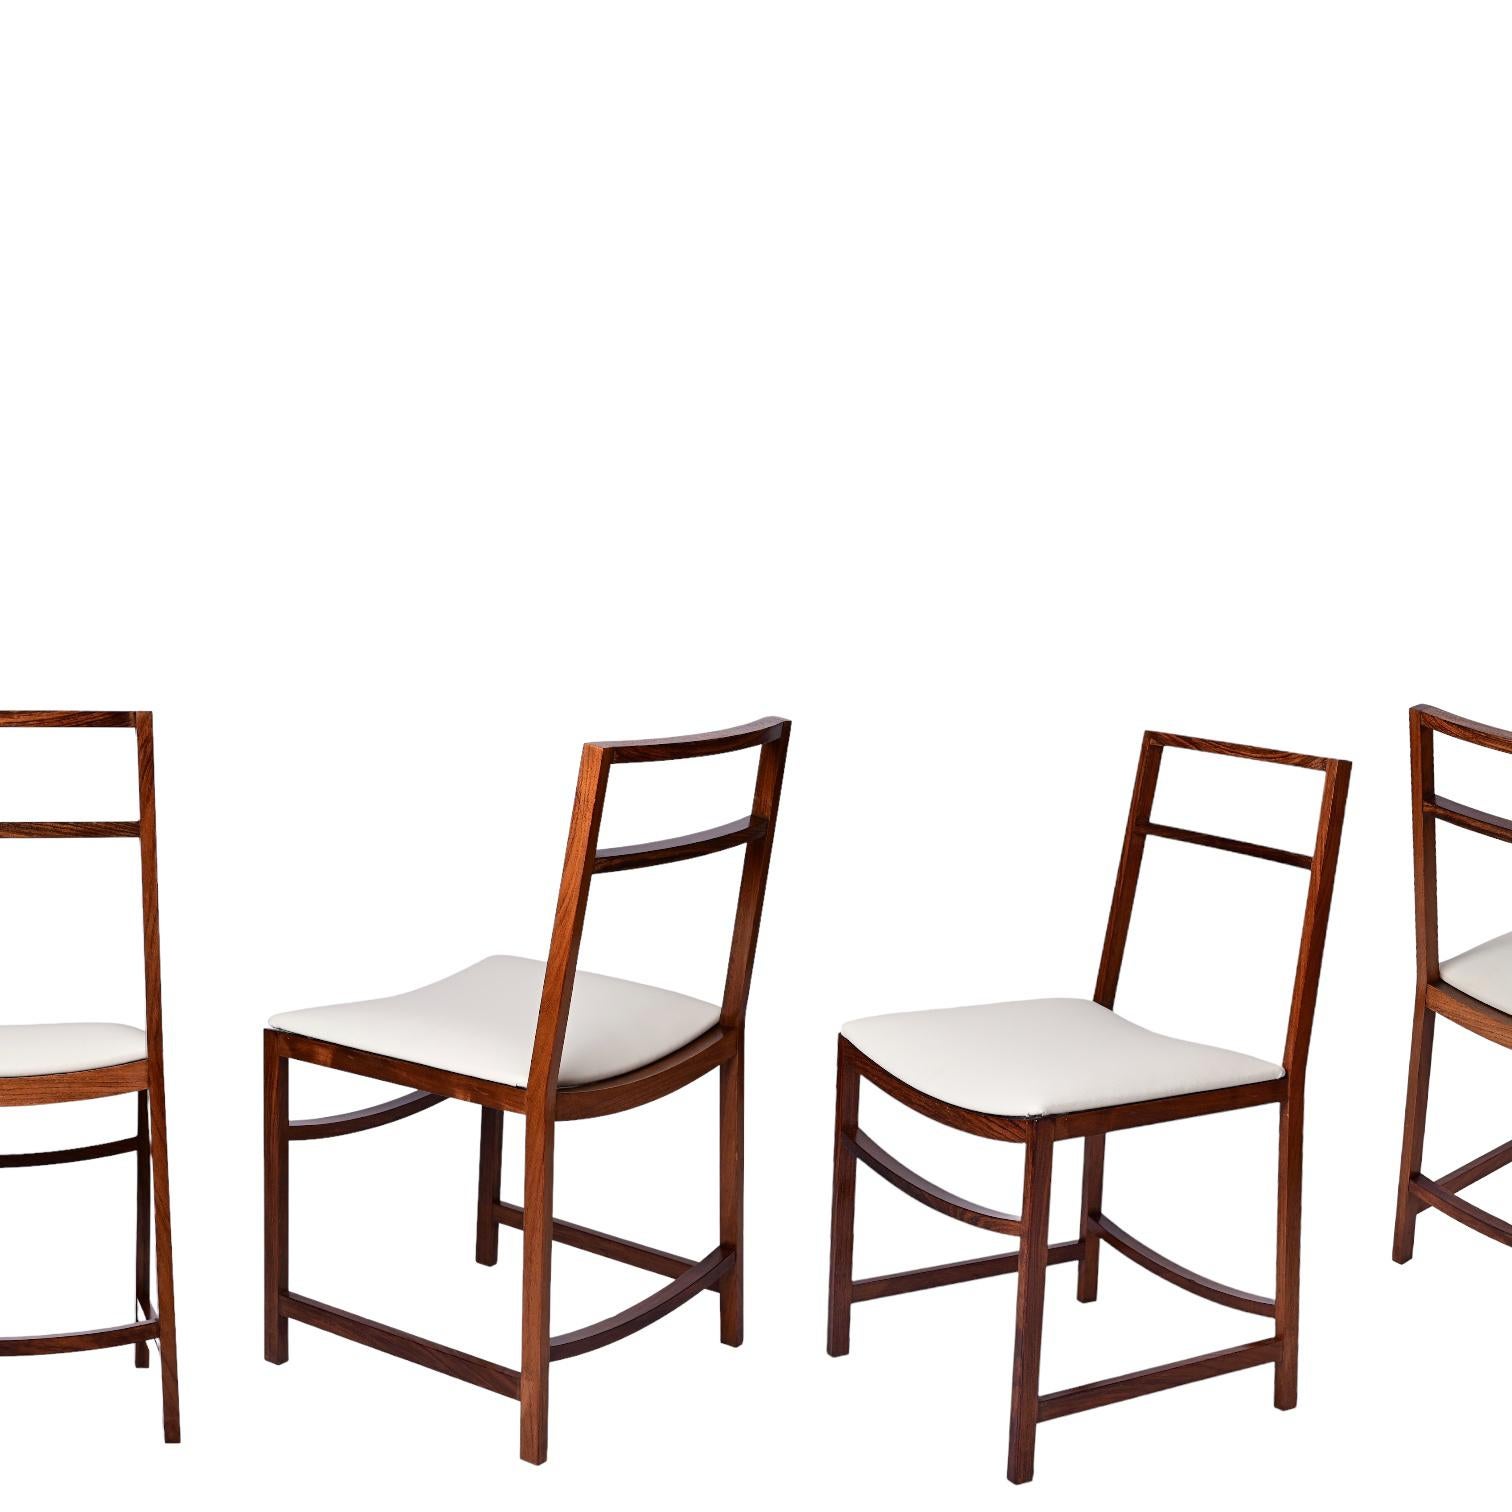 Chaises uniques en bois et en similicuir du milieu du siècle dernier. Renato Venturi a conçu ces étonnantes chaises pour le MIM Roma dans les années 1960 en Italie.

Ces chaises fantastiques sont dotées d'une structure en bois massif et de sièges